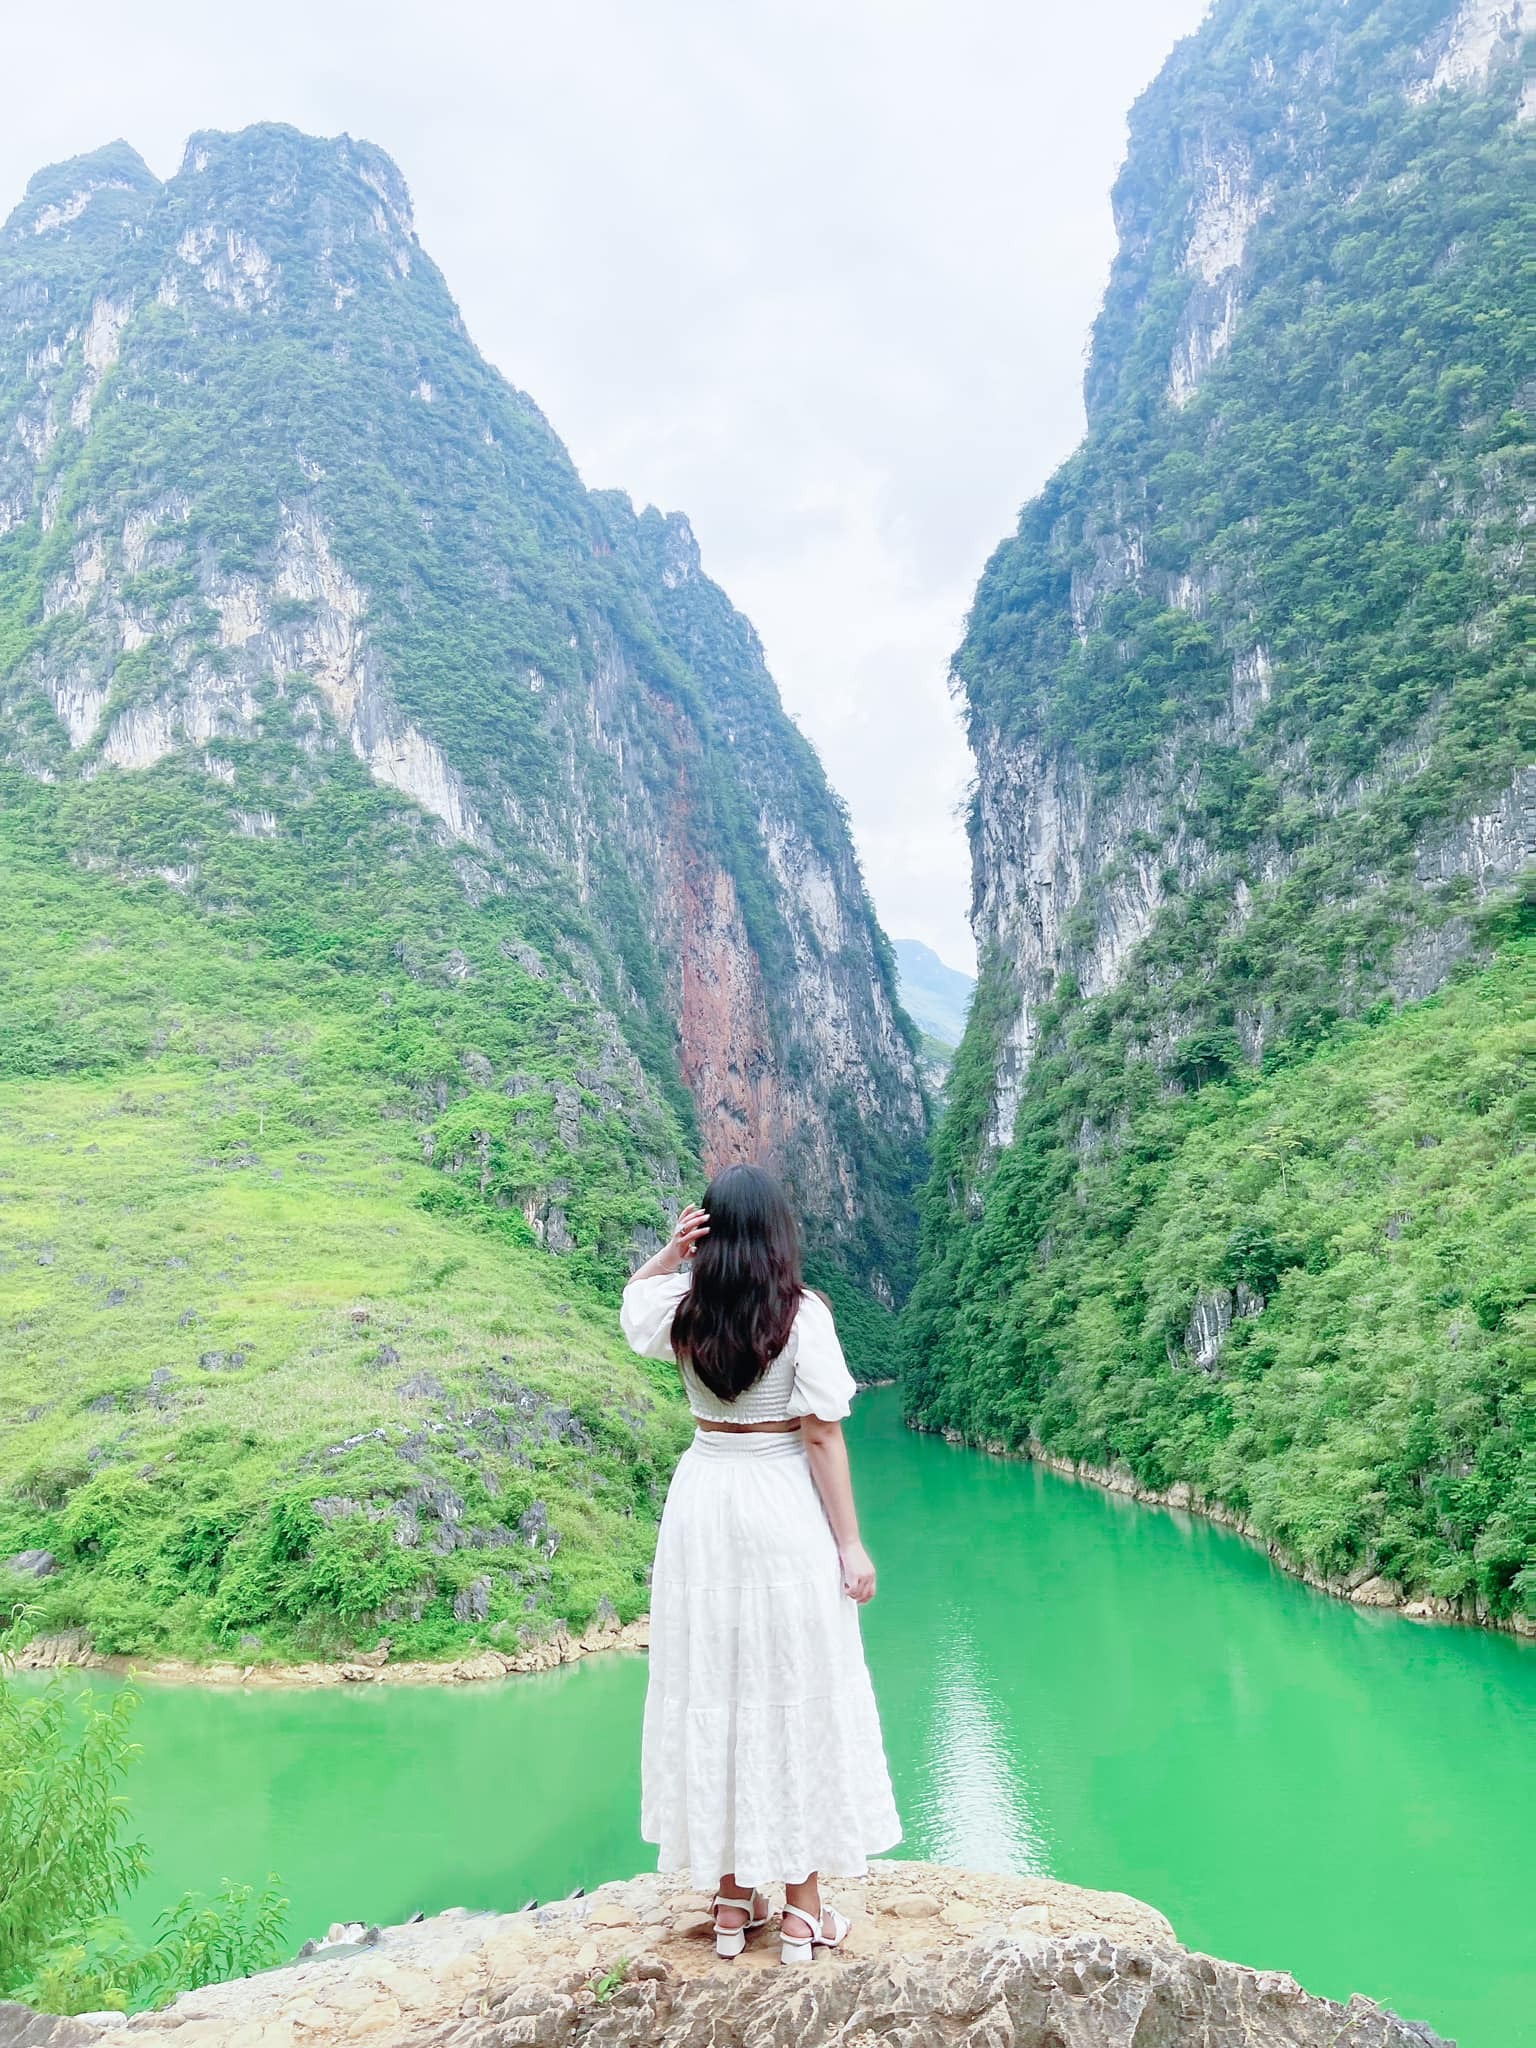 View - Khám phá Hà Giang: Đắm mình trong vẻ hoang sơ, núi đá hùng vĩ